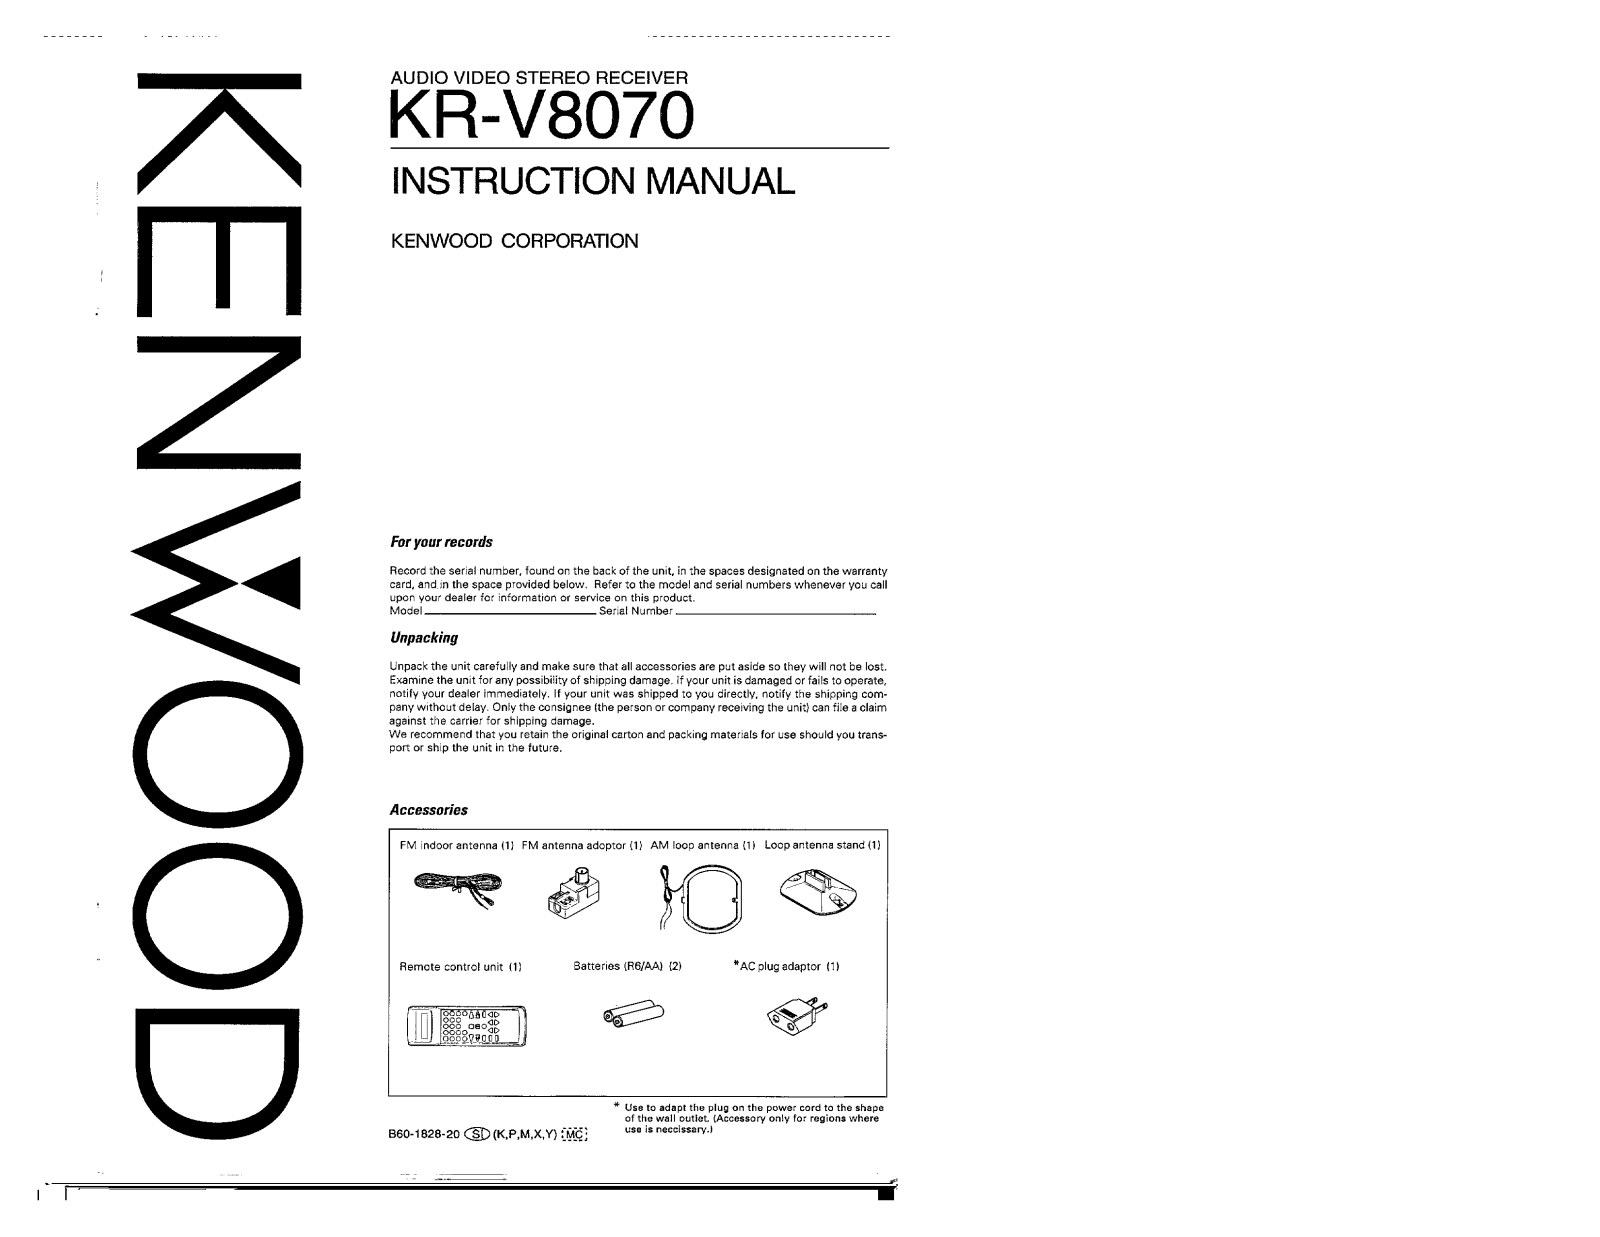 Kenwood KR-V8070 Owner's Manual